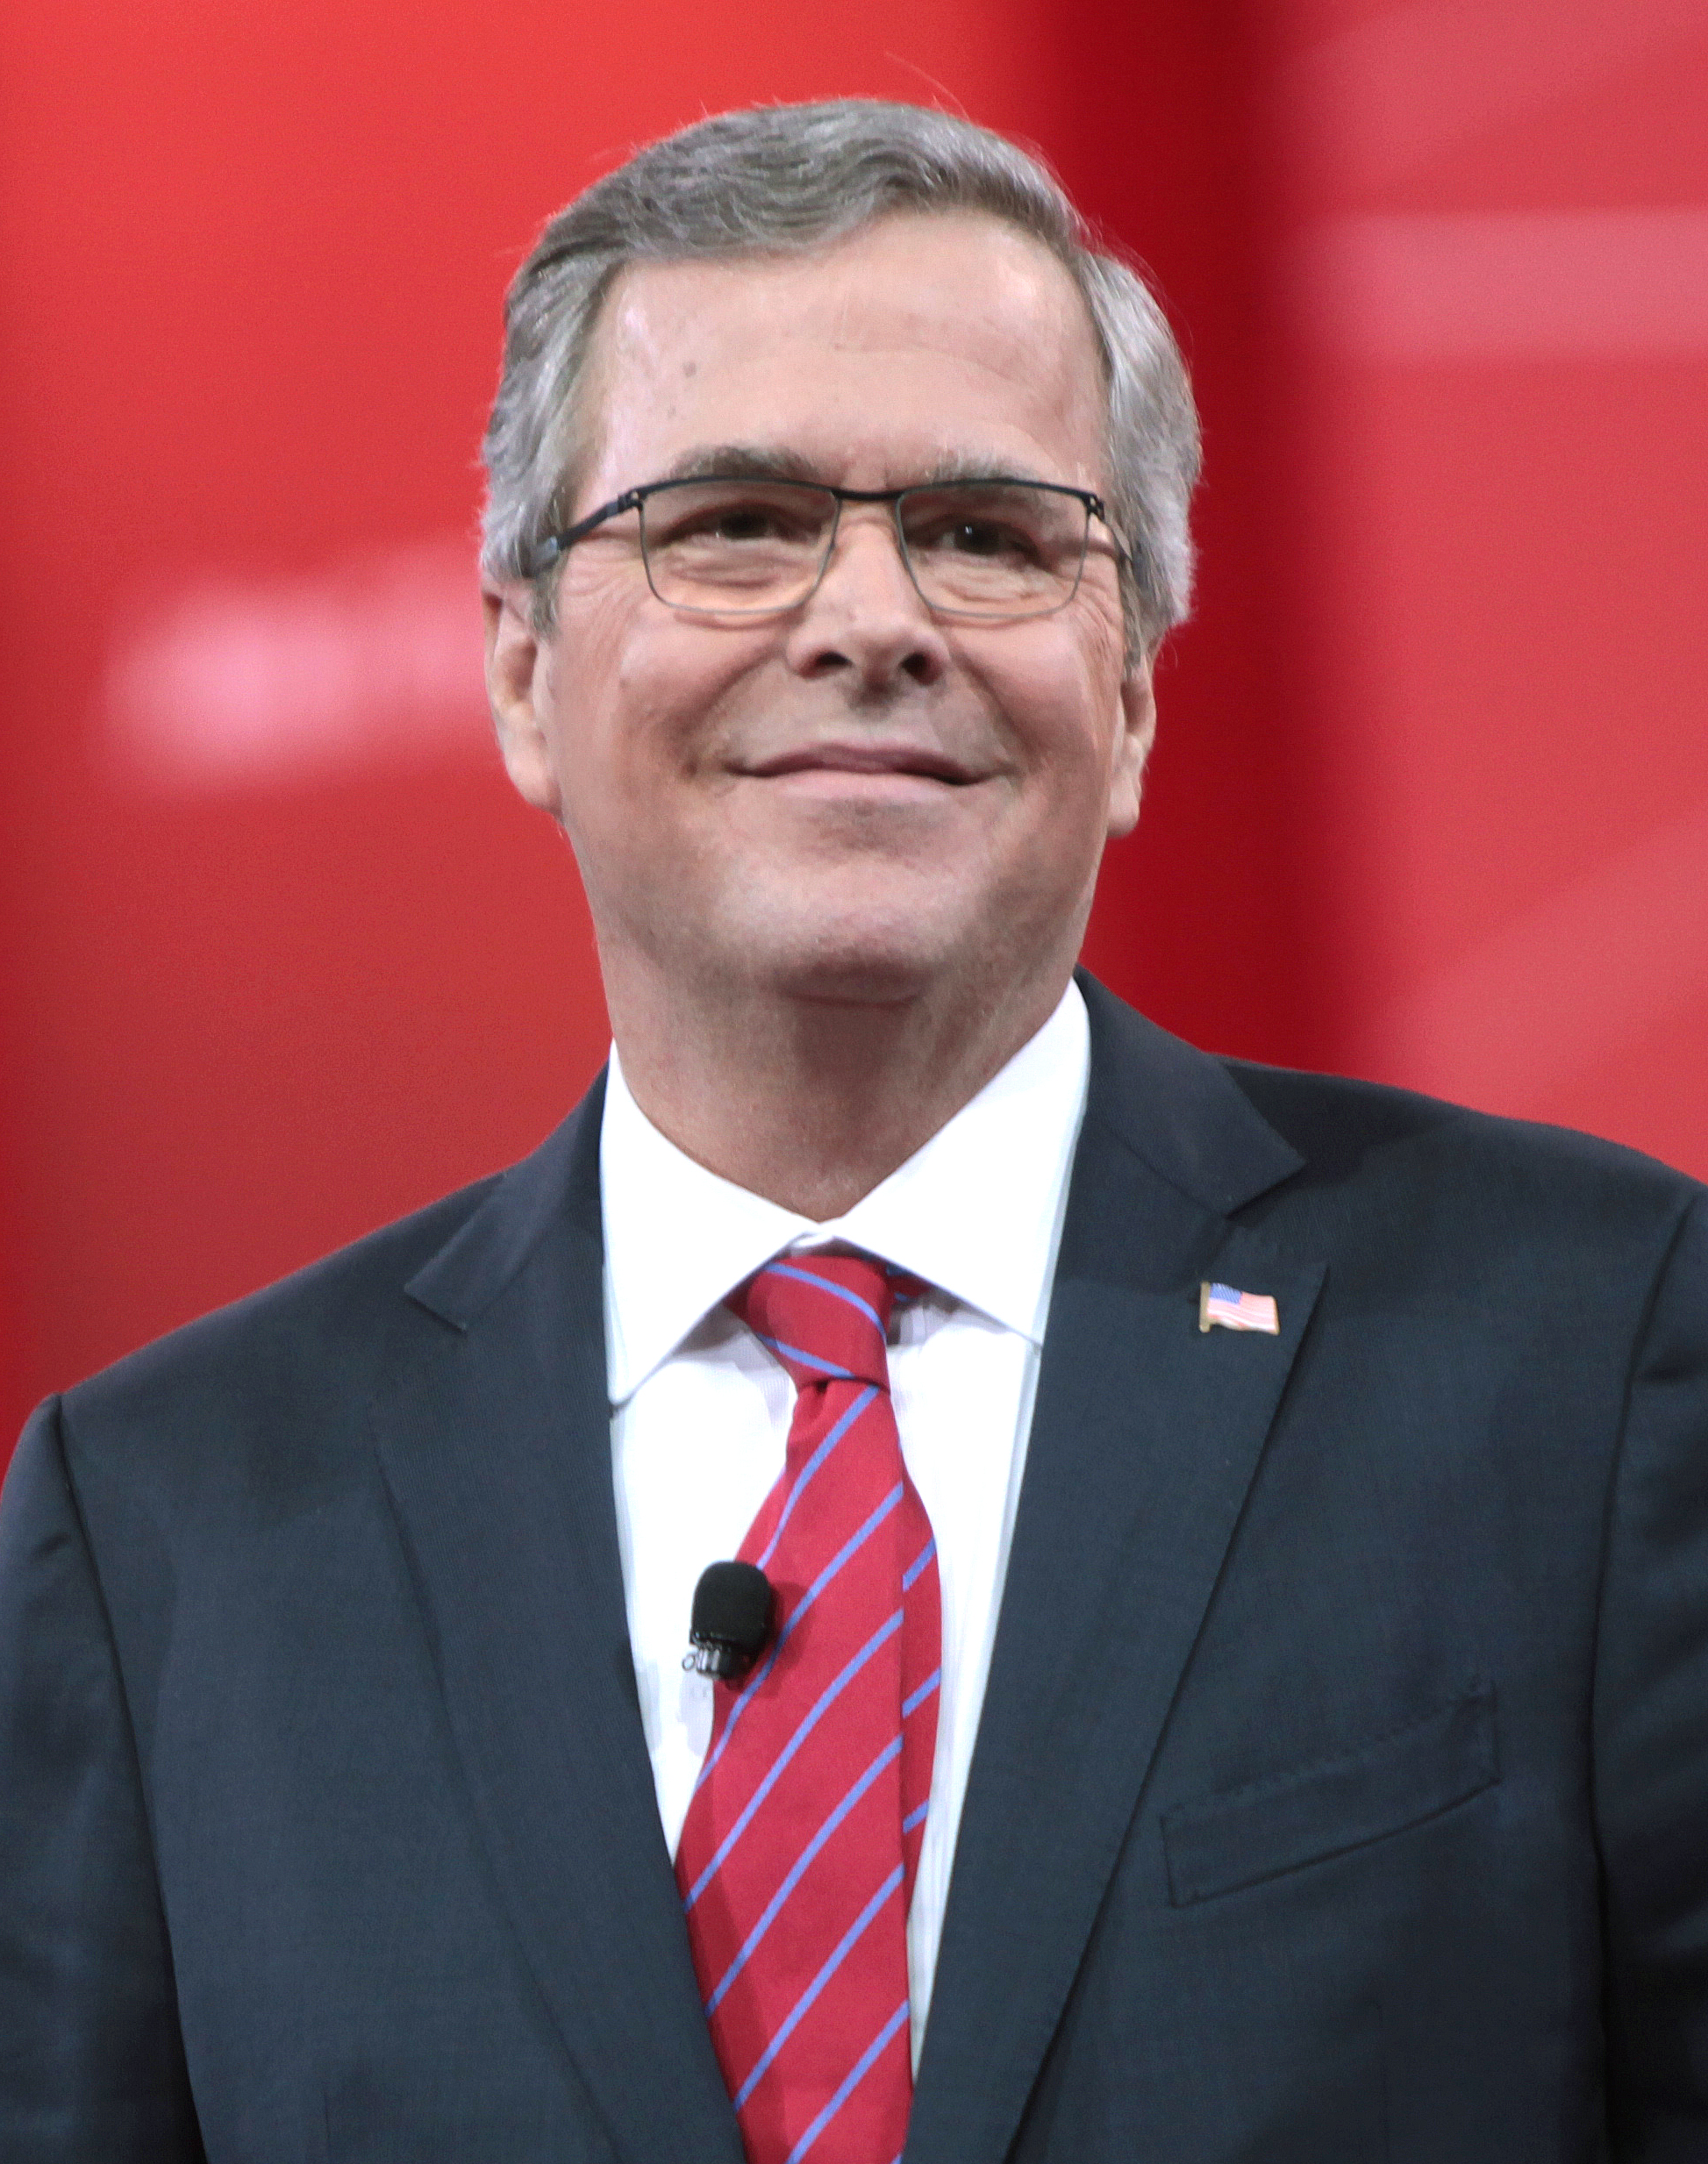 Republican Presidential candidate Jeb Bush